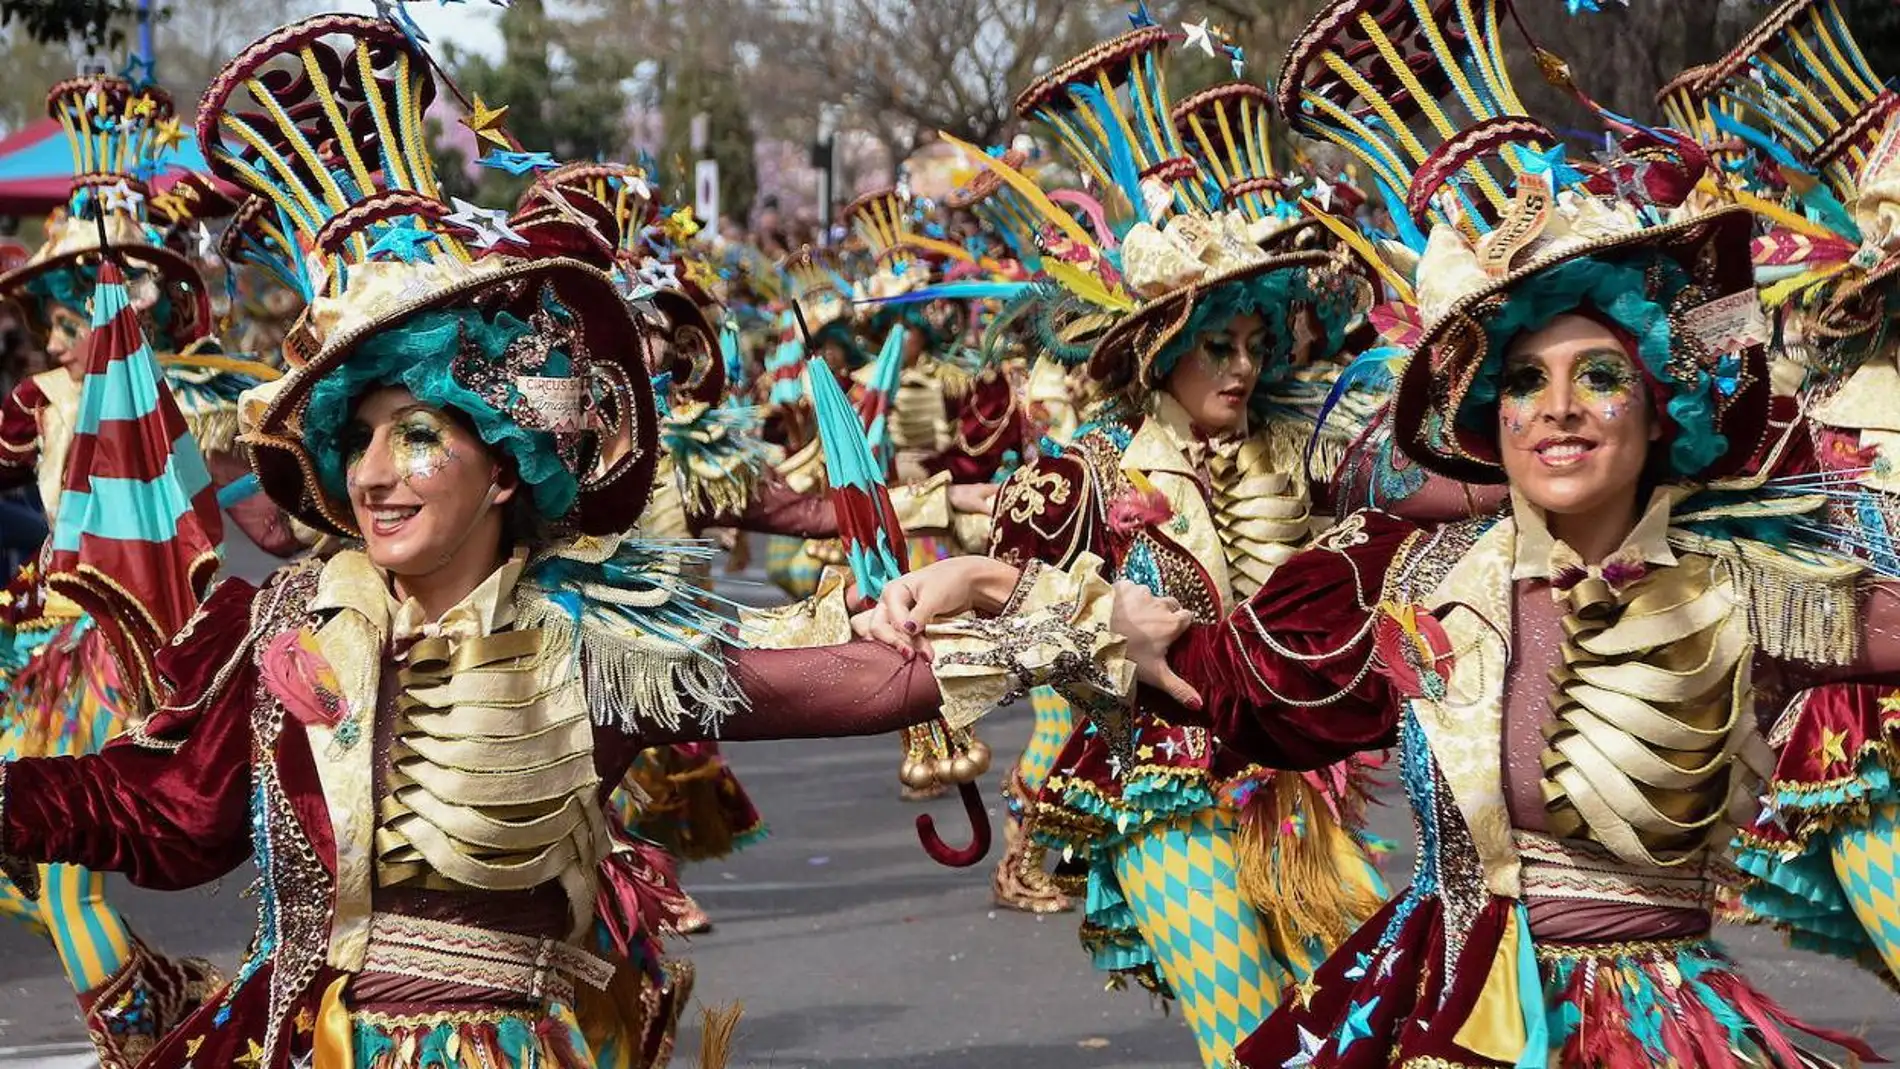 La comparsa 'Donde vamos la liamos' de Olivenza será la encargada de abrir el desfile del Carnaval en Badajoz